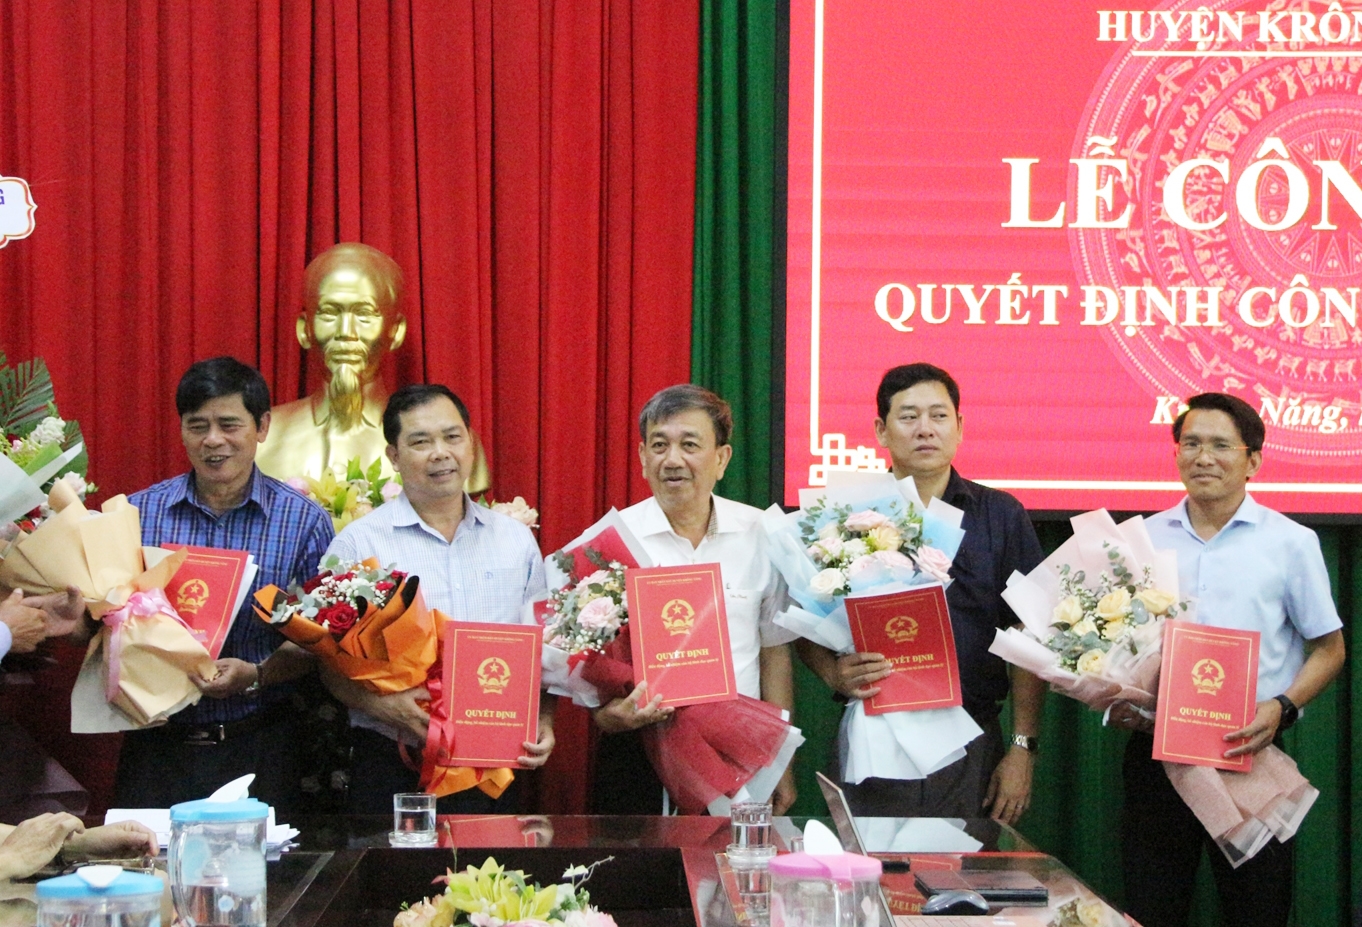  5 cán bộ huyện Krông Năng nhận Quyết định điều động